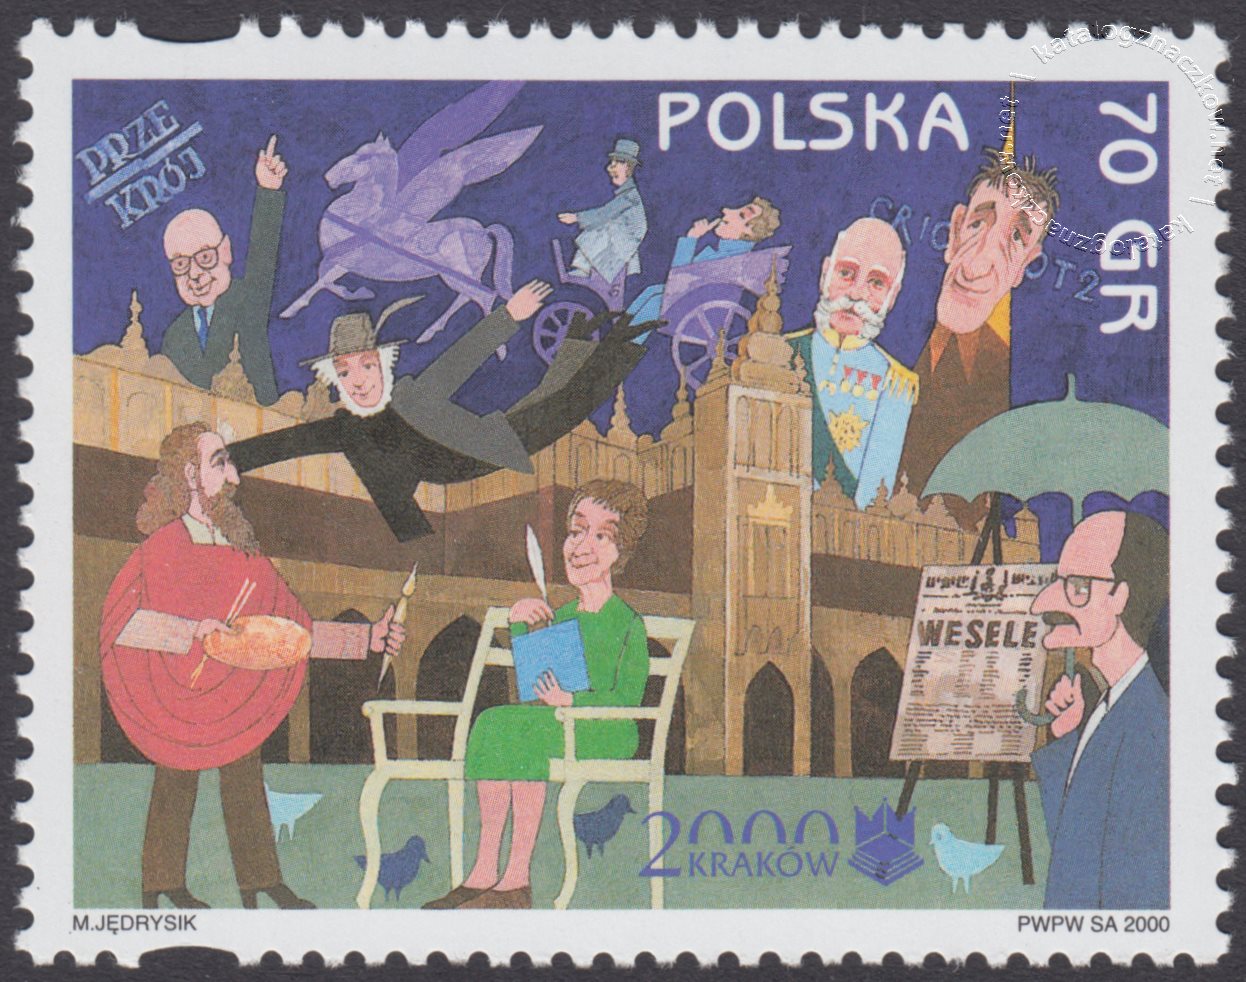 Kraków – Europejskie Miasto Kultury roku 2000 znaczek nr 3677